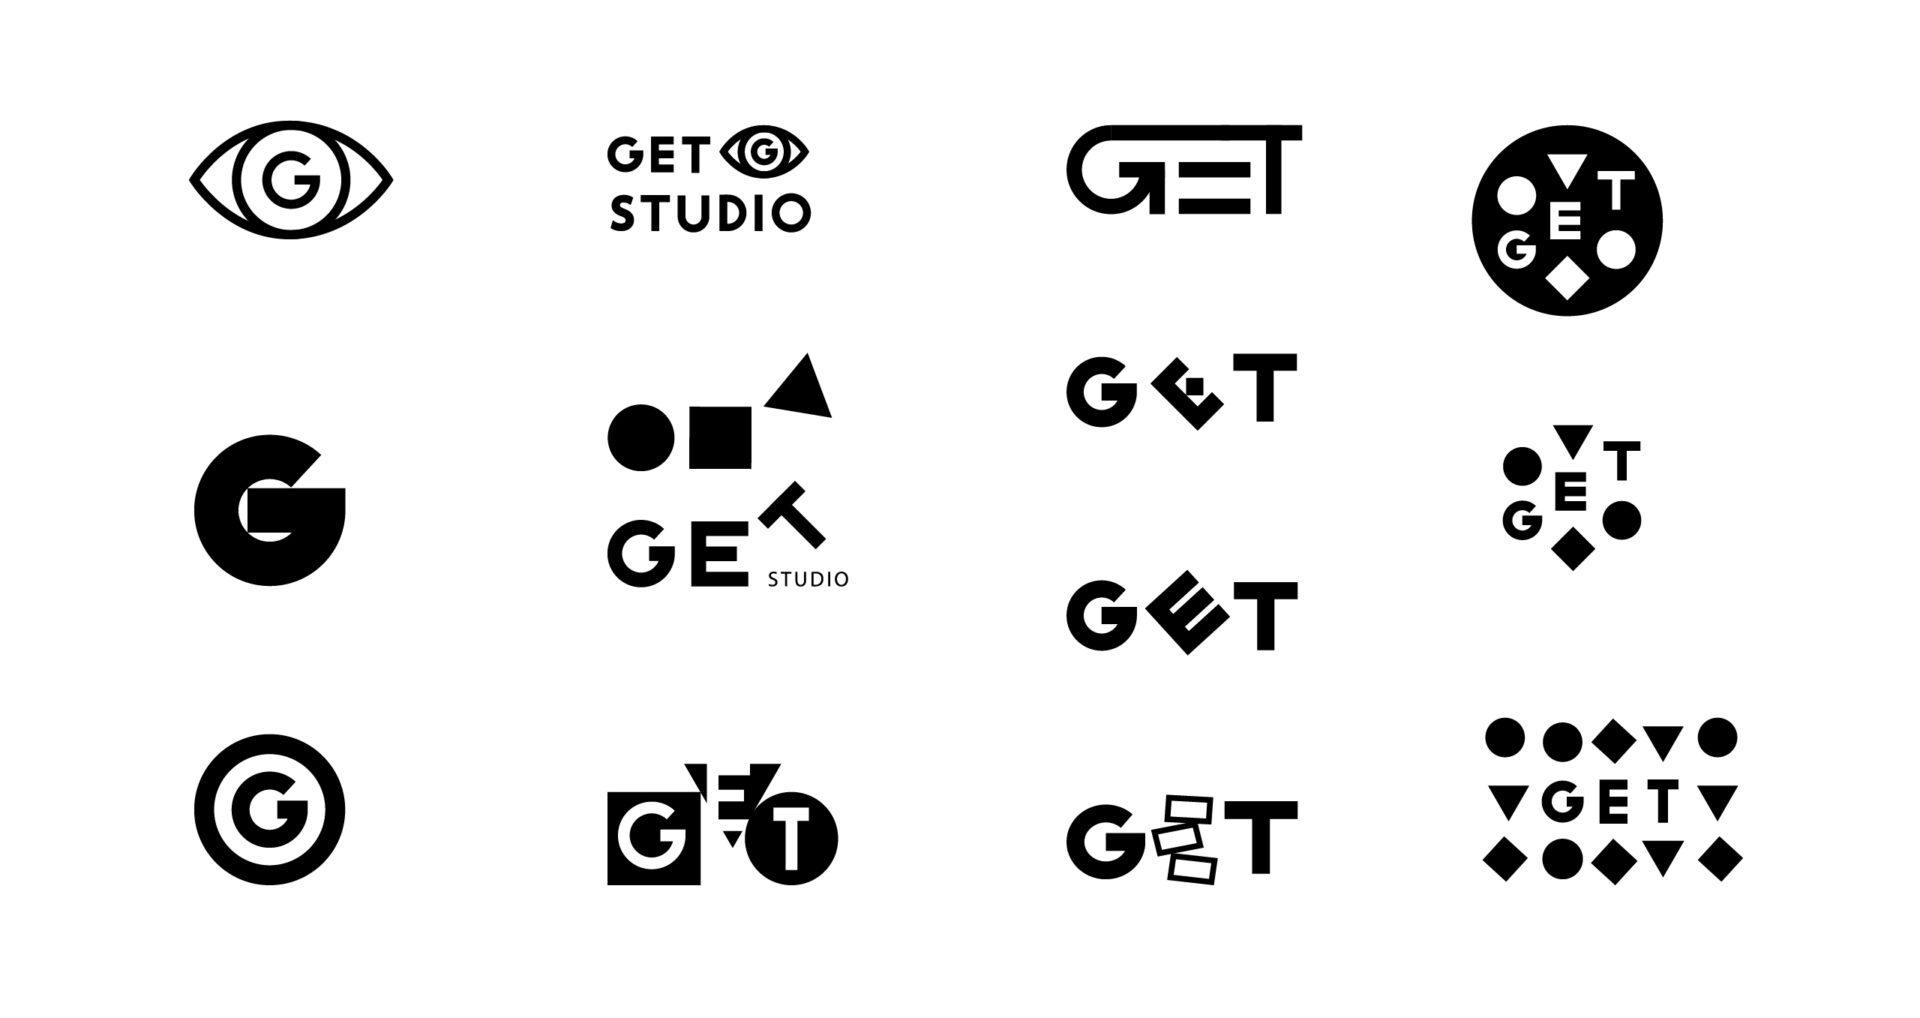 Visuaalne identiteet ja logo - Get Studio